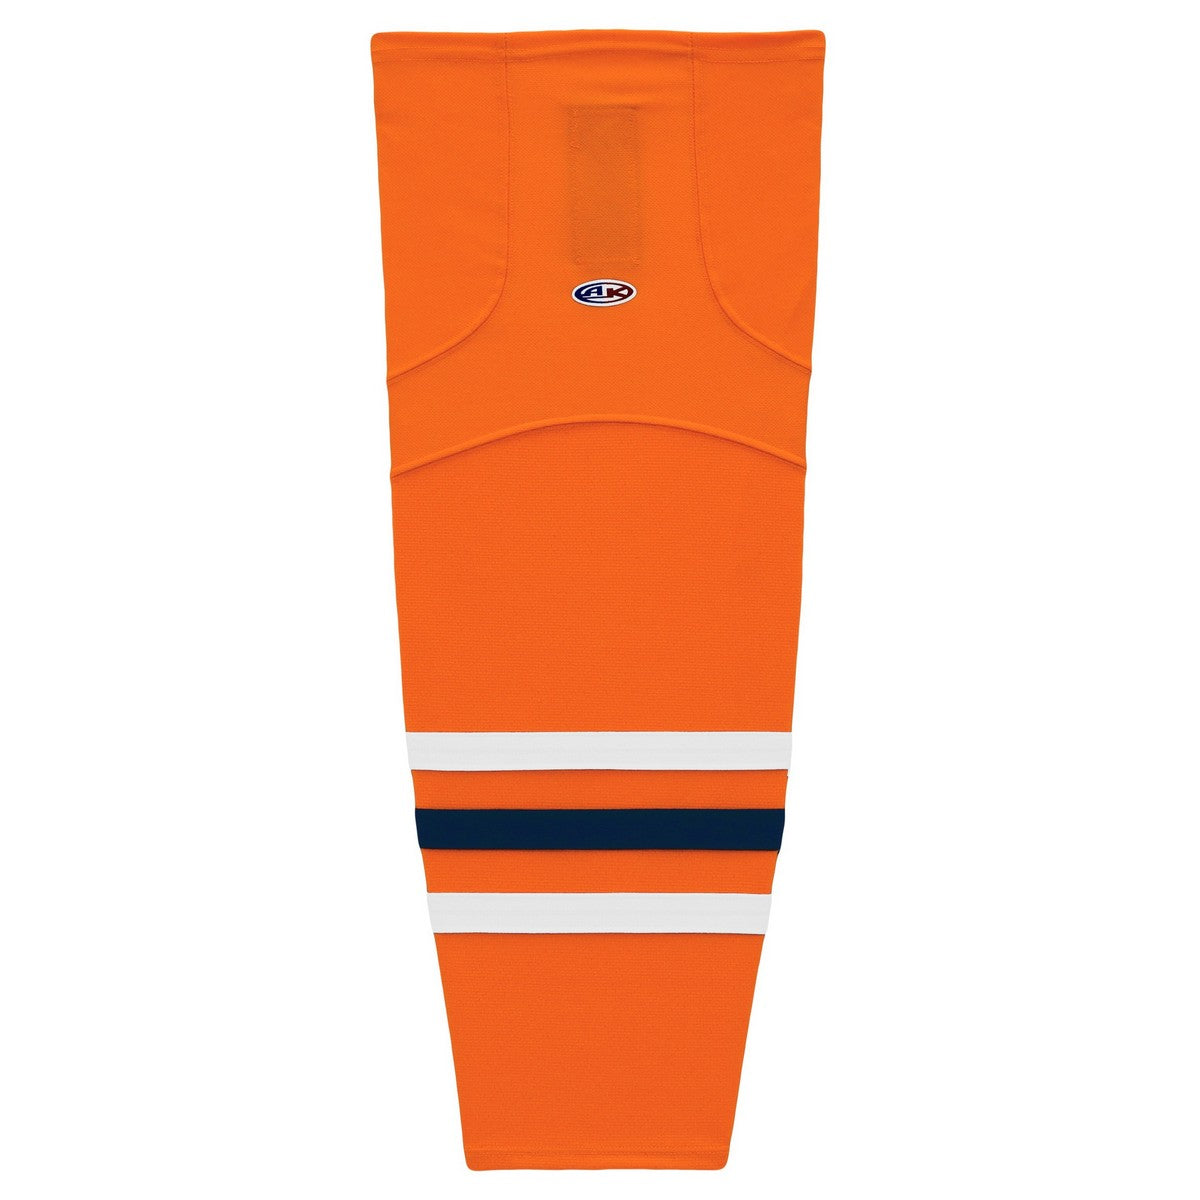 Striped Dry-Flex Moisture Wicking Orange/Navy/White Hockey Socks